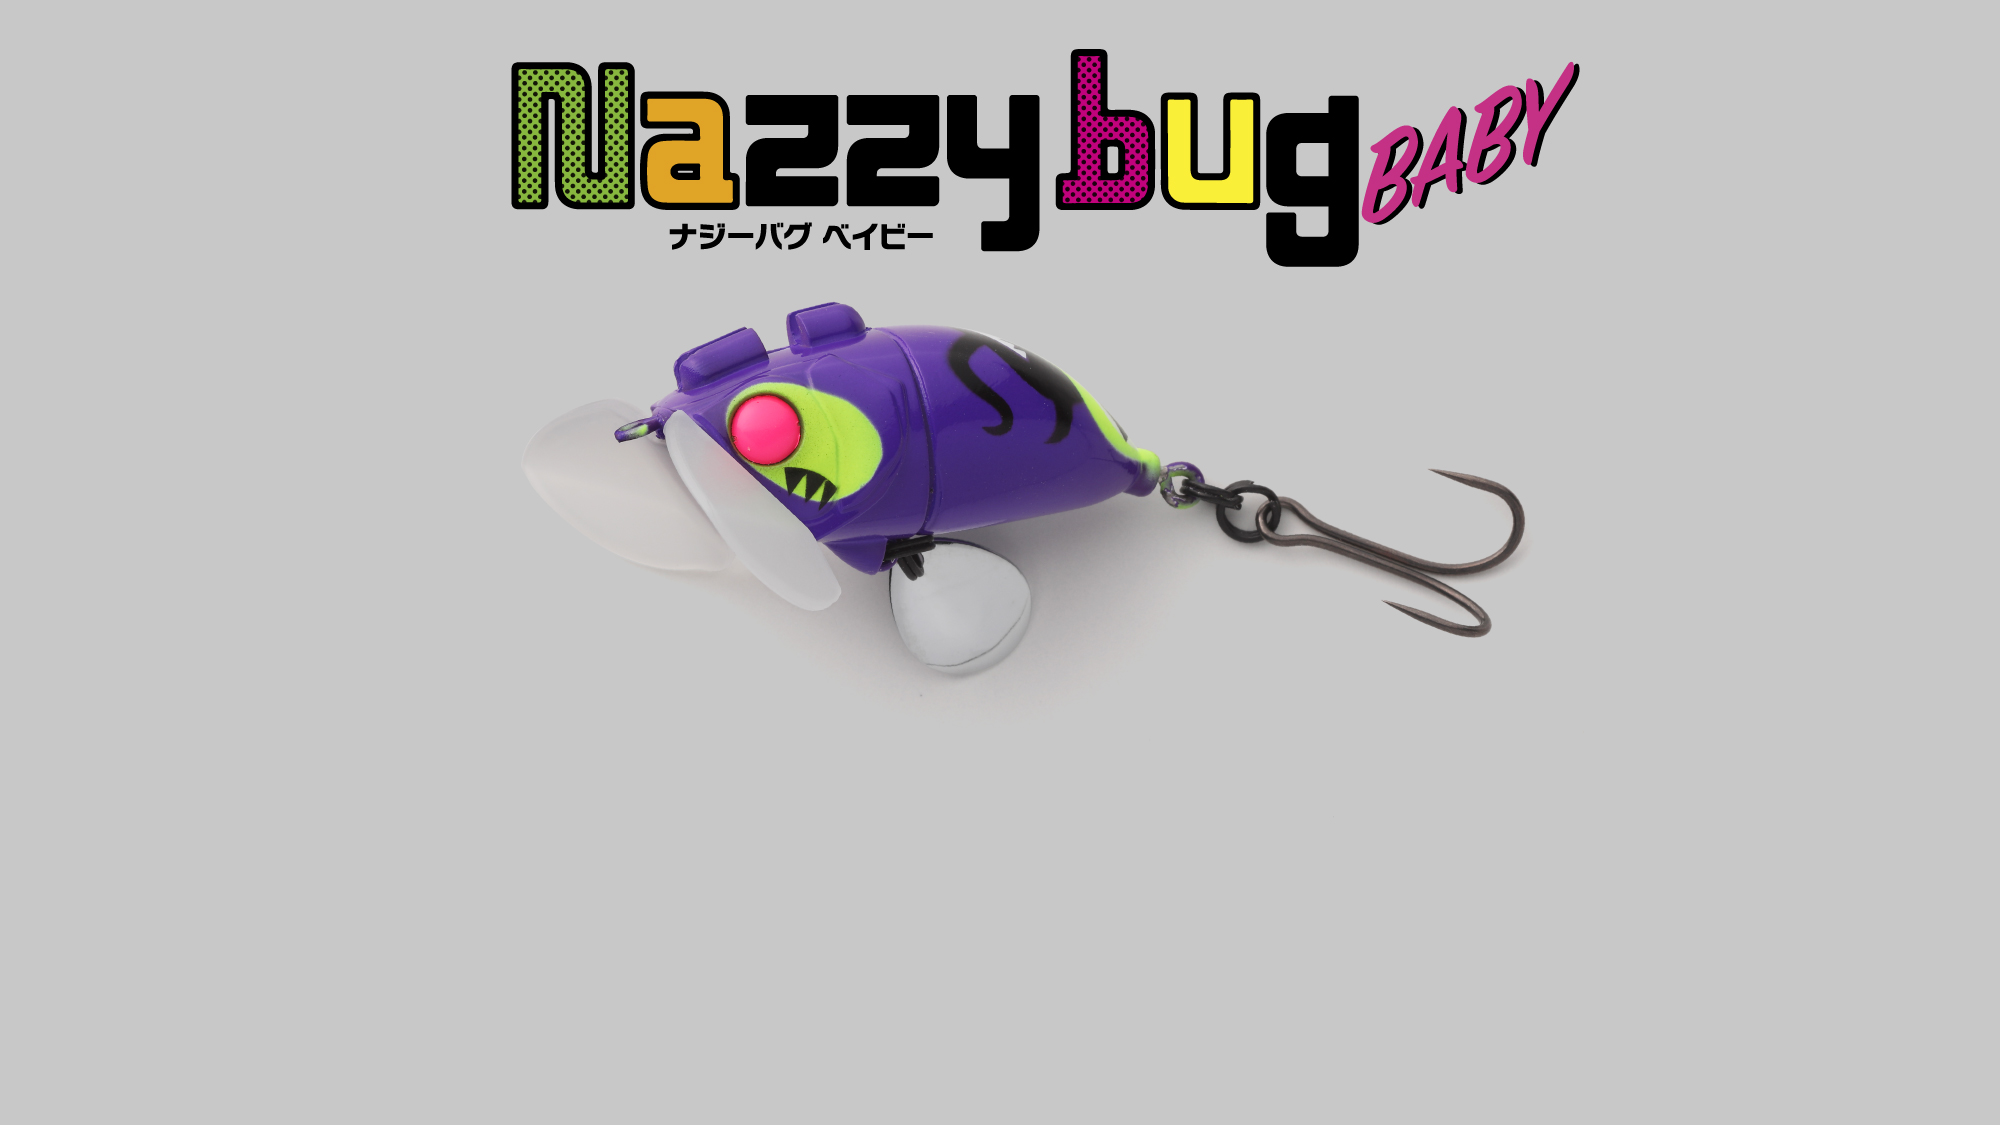 ナジーバグベイビー Nazzy bug Baby / ナジーバグベイビー